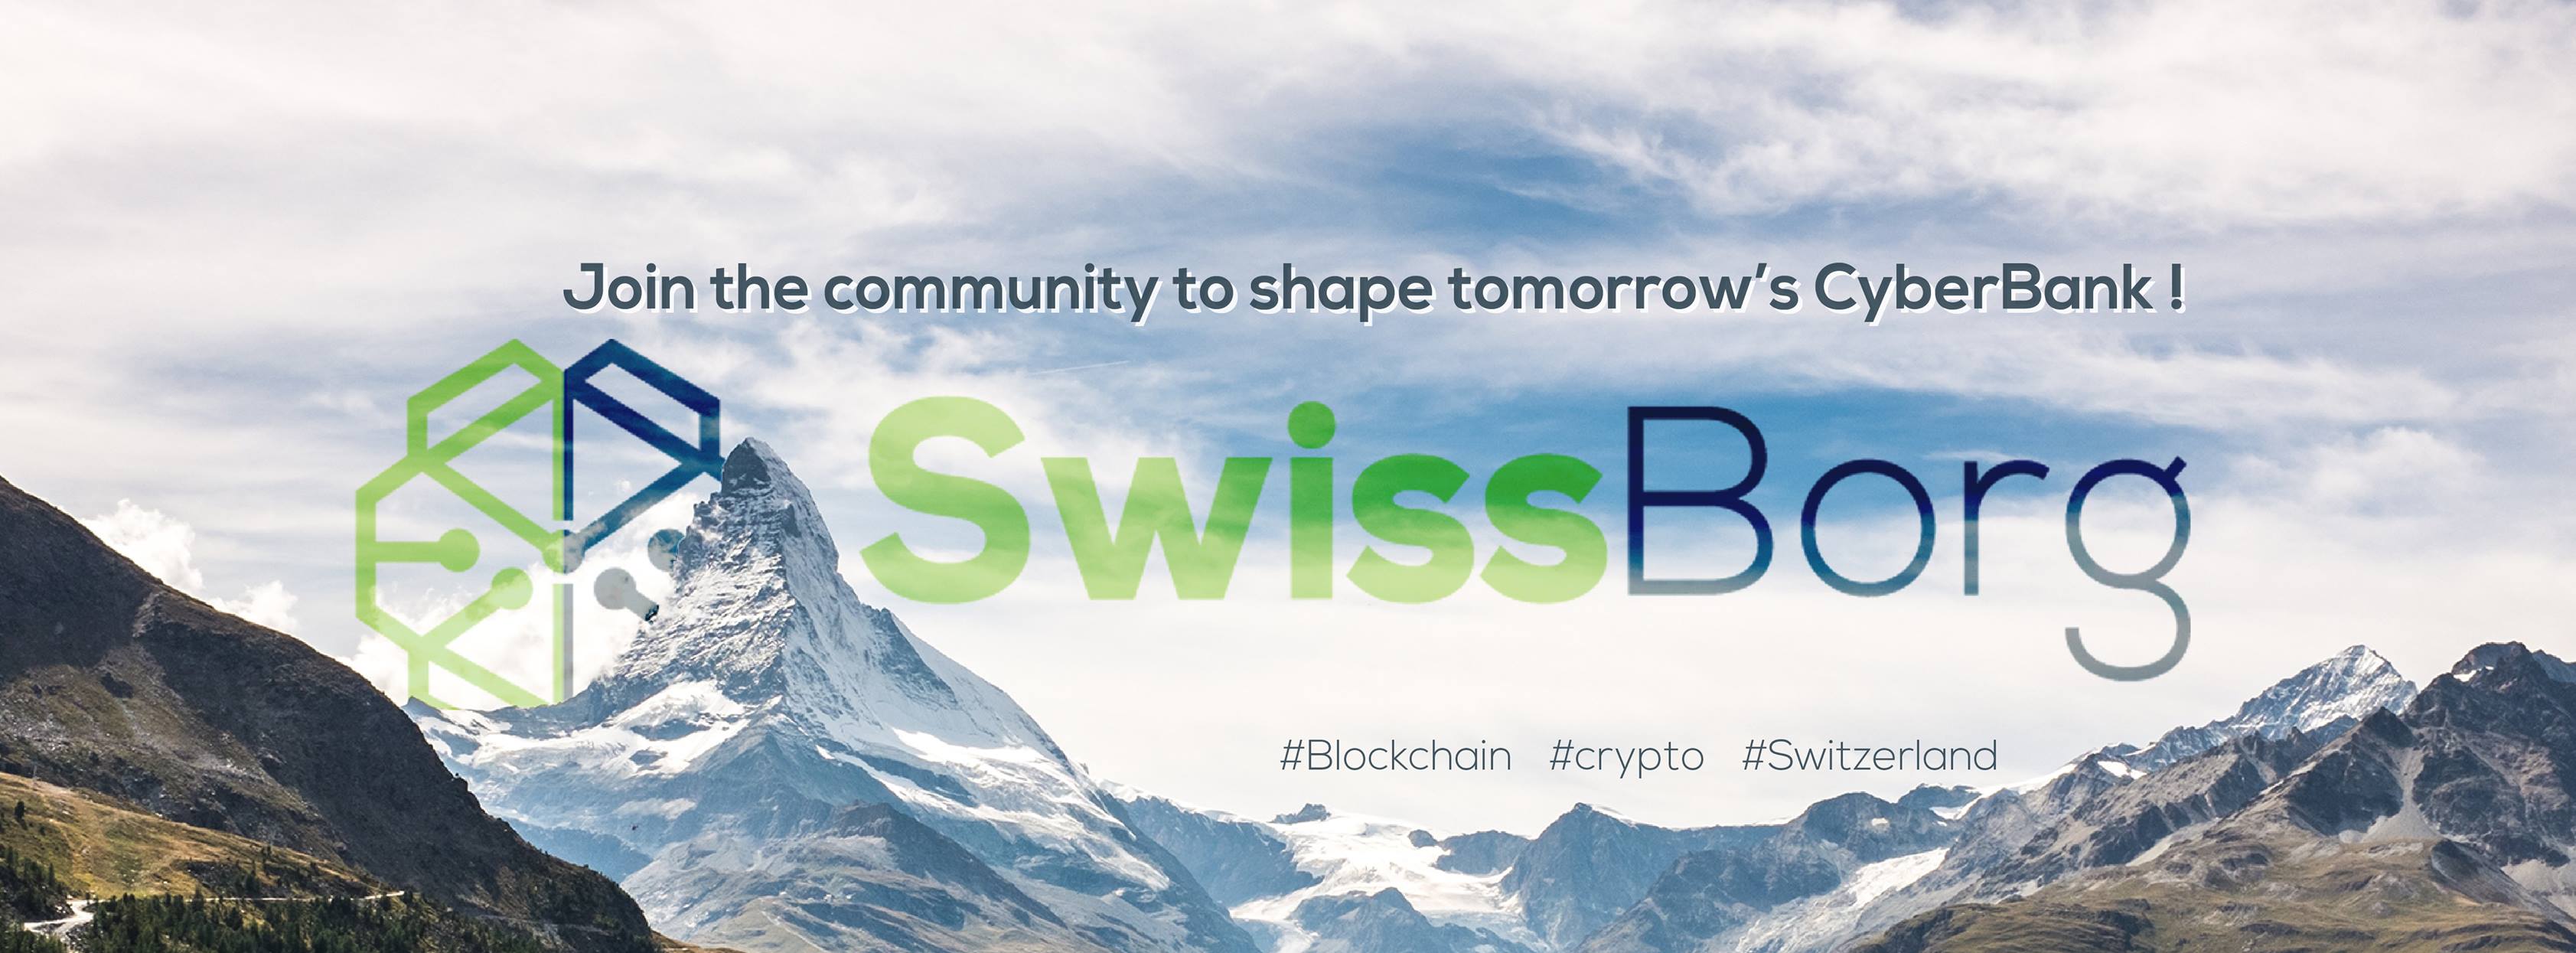 SwissBorg Swiss Private Banking Blockchain